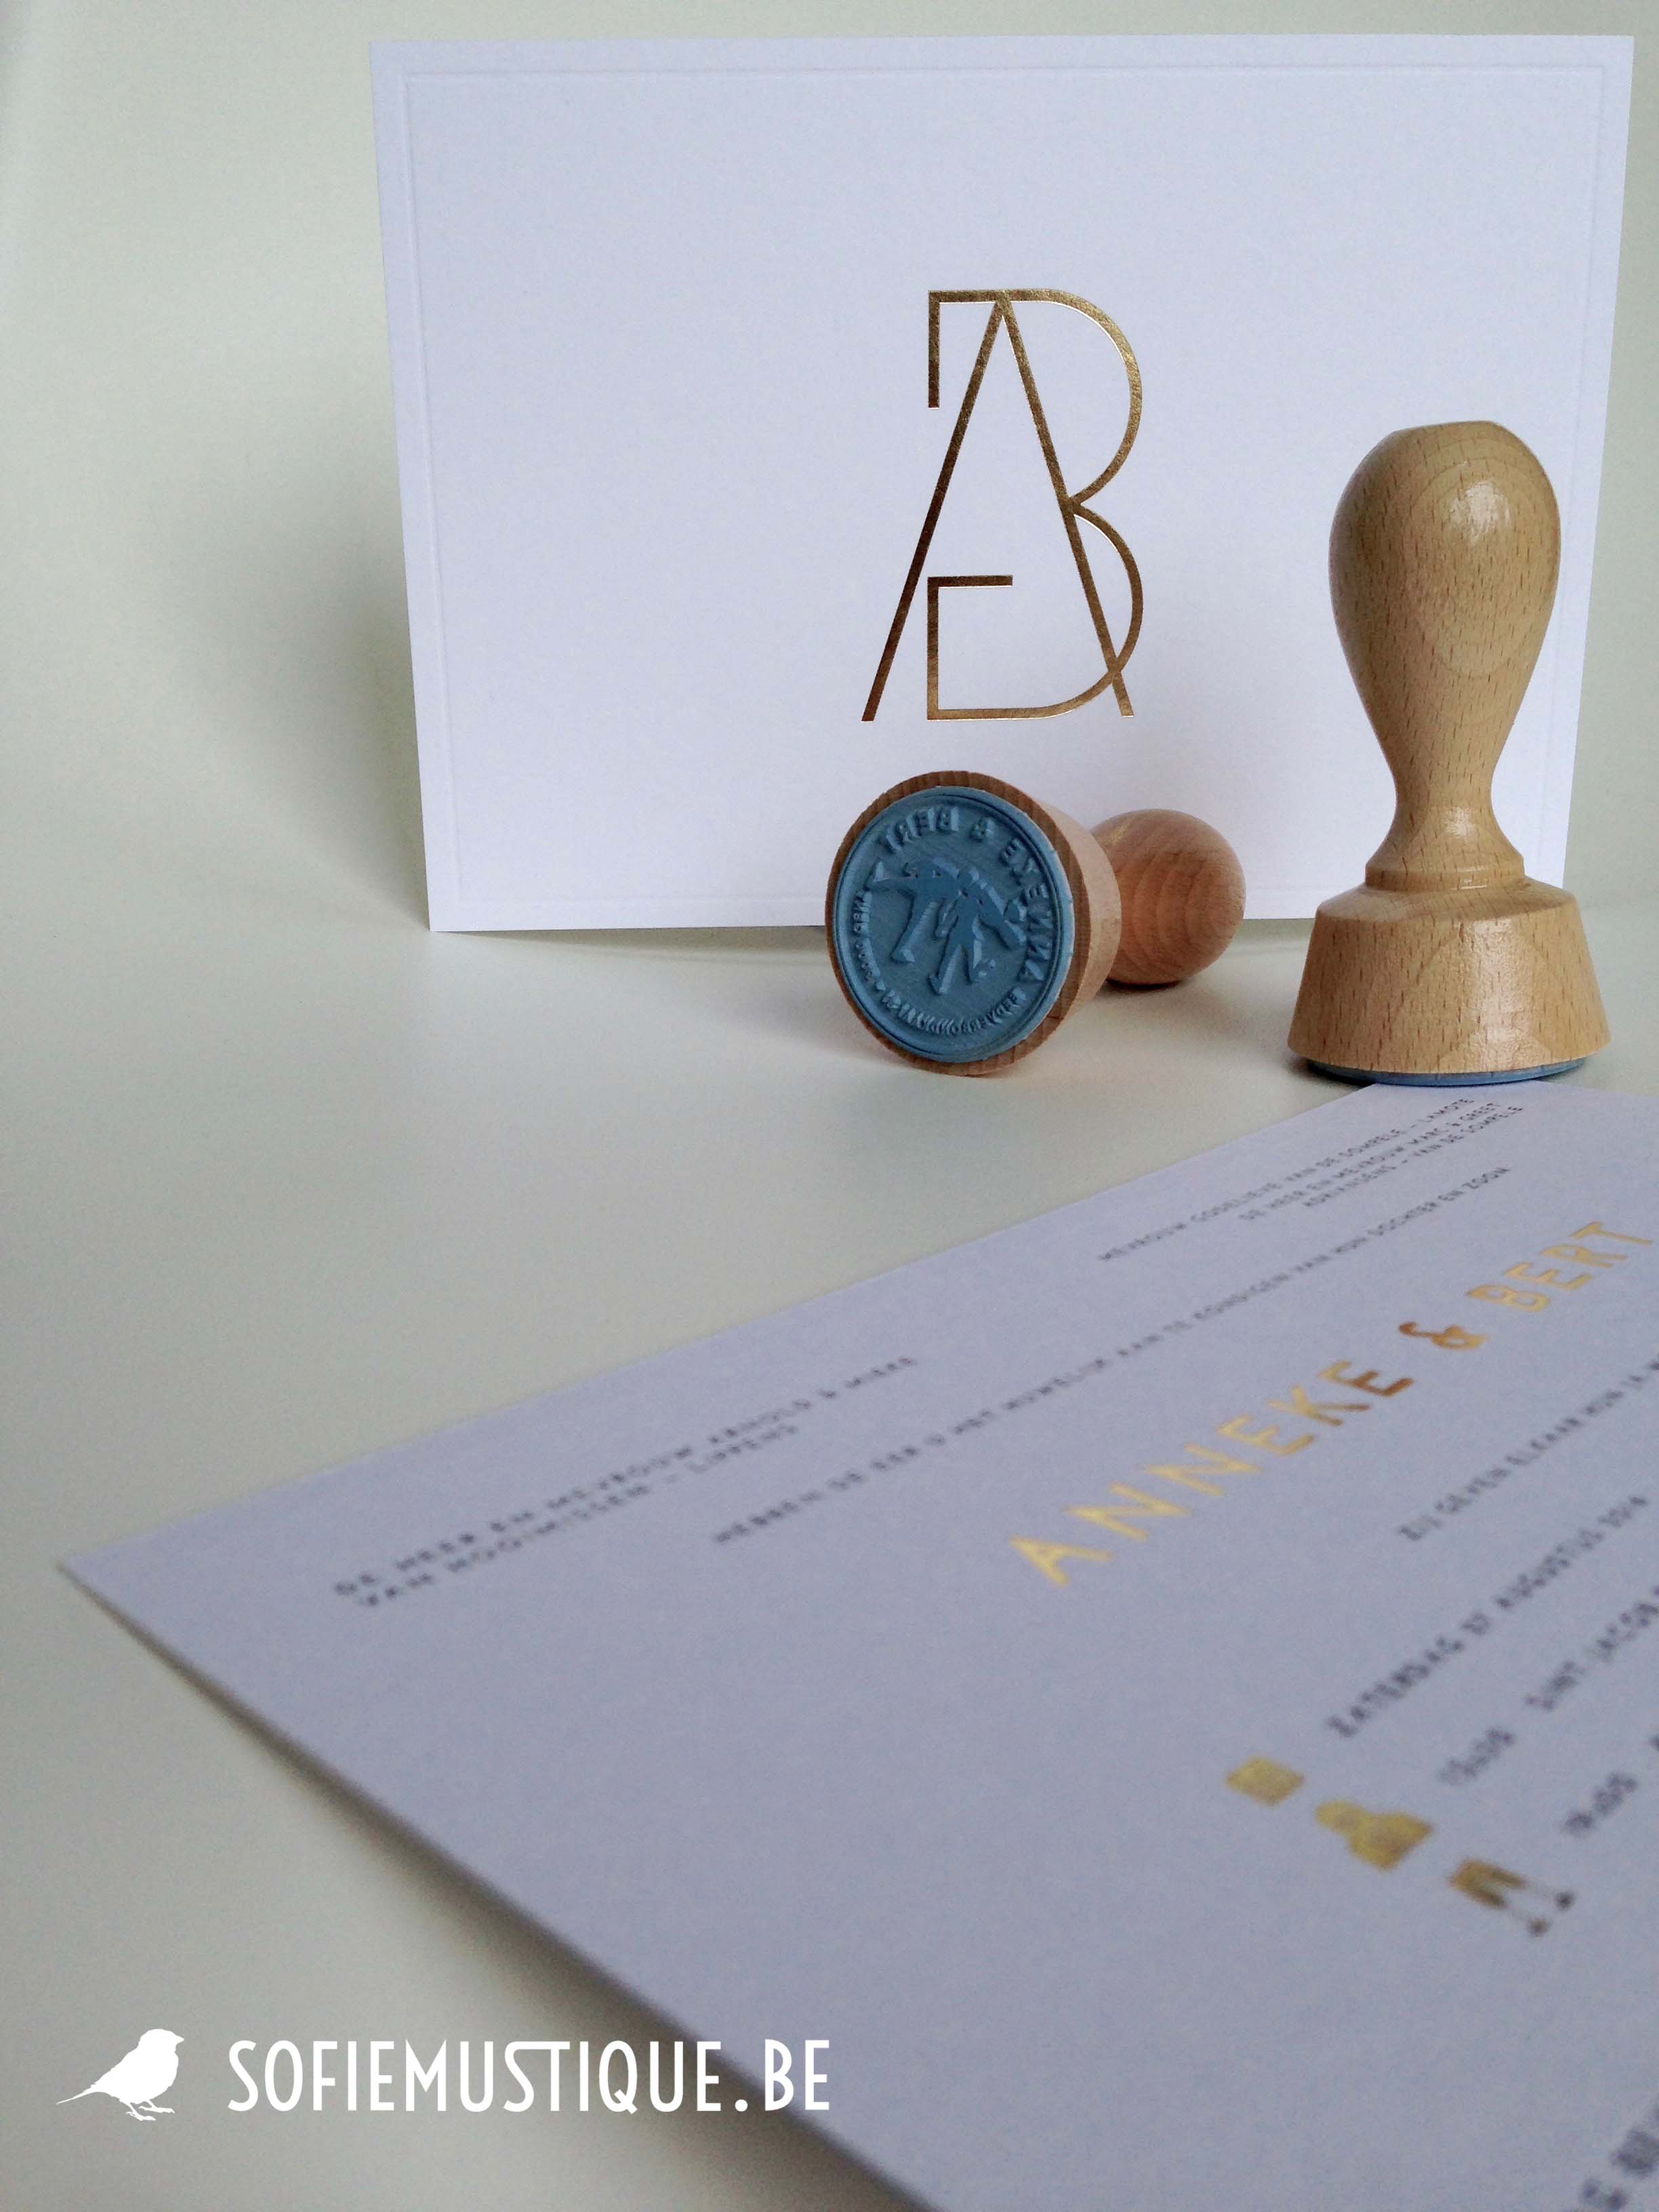 Huwelijksuitnodiging / wedding invitation Anneke & Bert | goudfolie, gold hot foil, logo, stempels, stamps